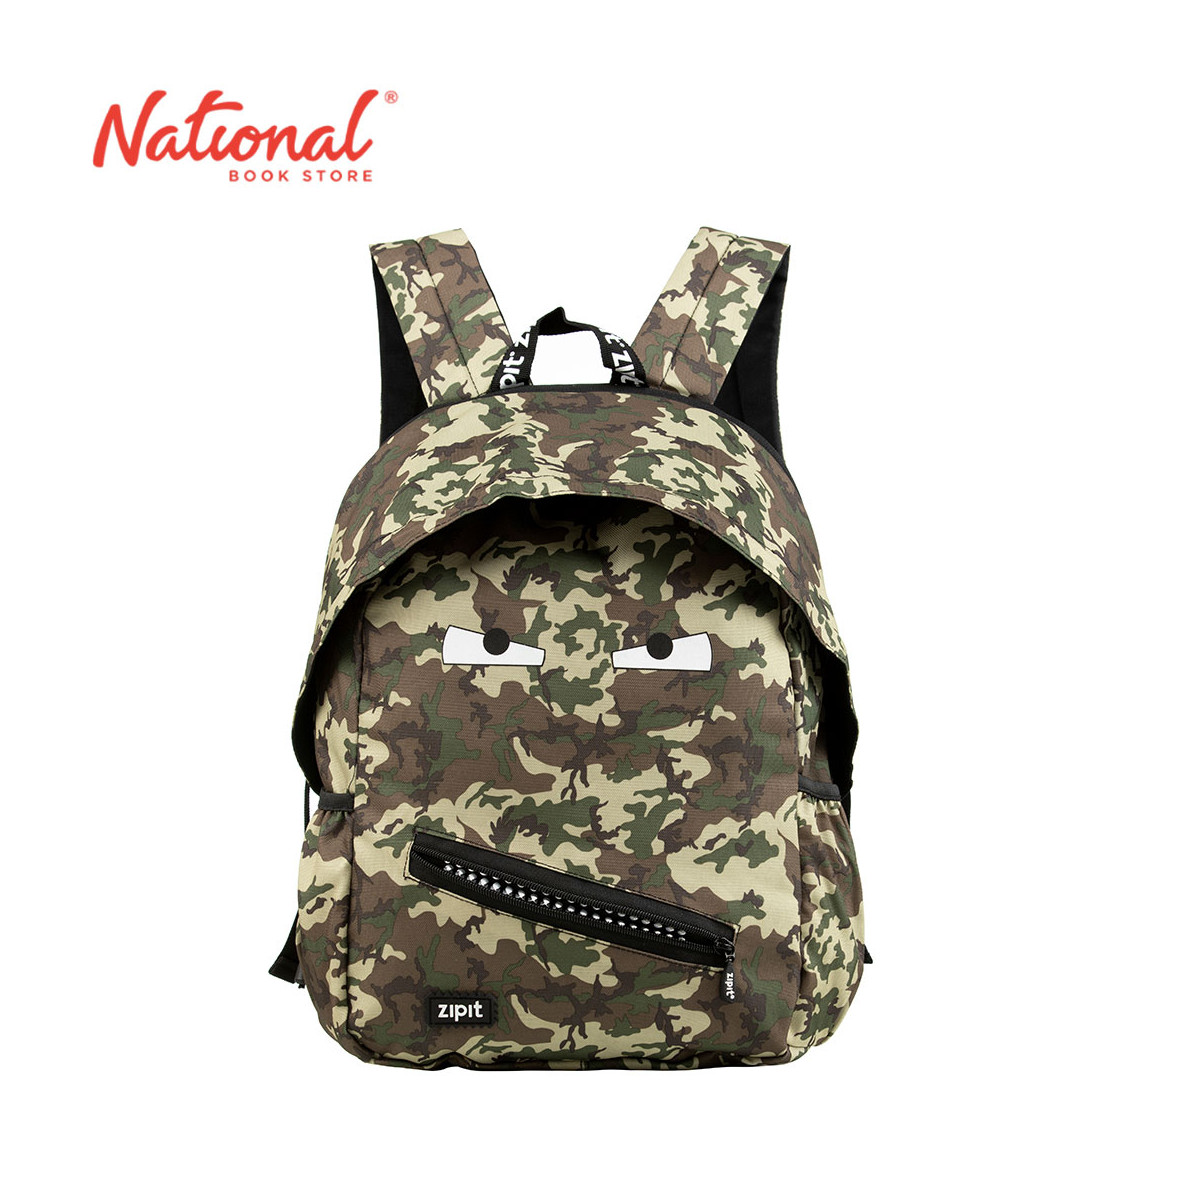 Zipit Grillz Backpack ZBPL-GR-N6 Camo, Green - School Bags